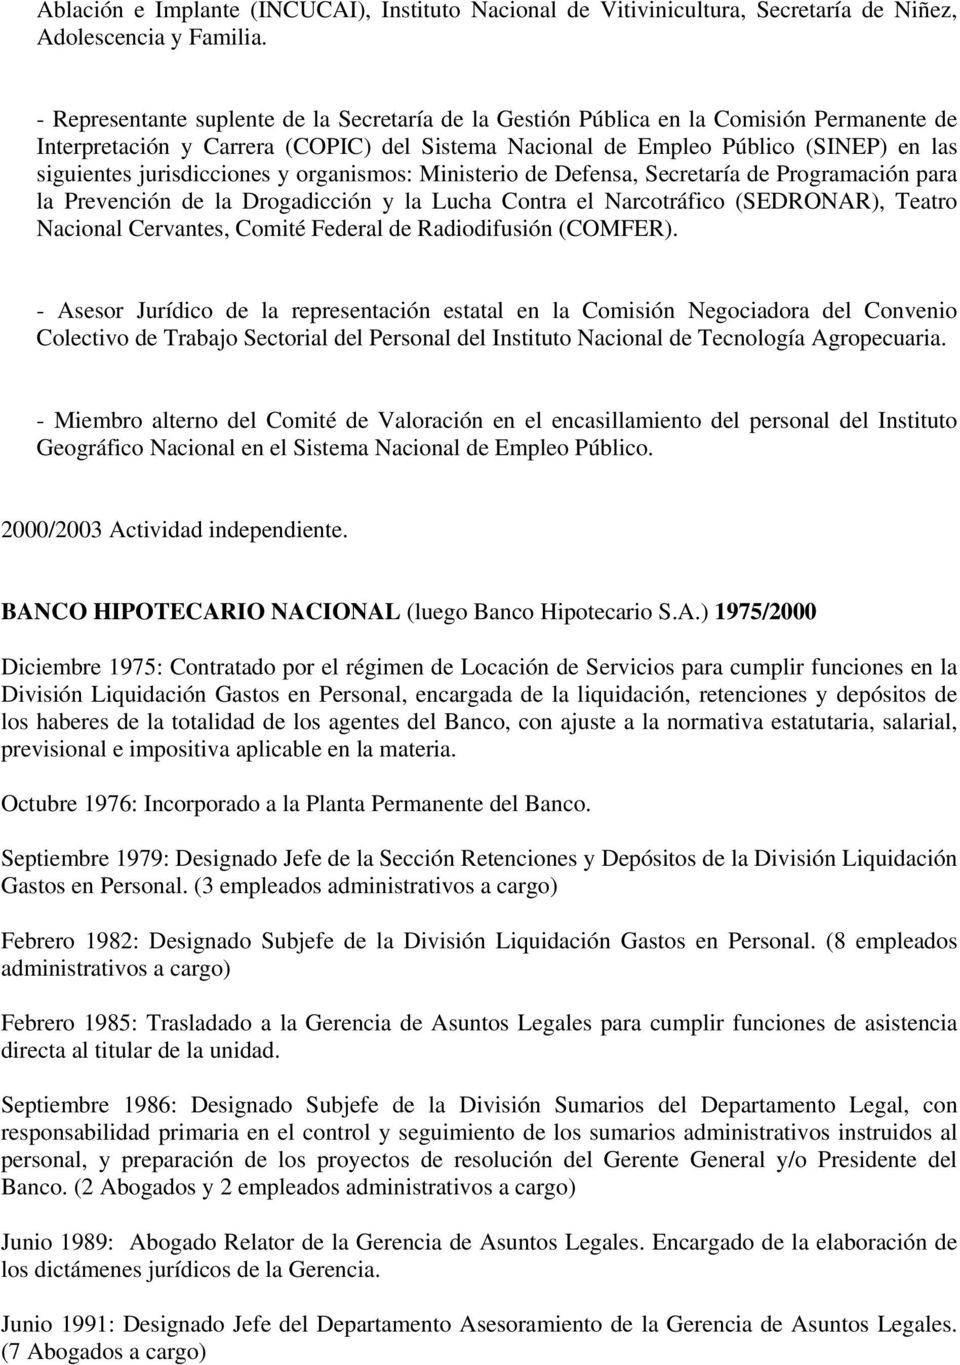 jurisdicciones y organismos: Ministerio de Defensa, Secretaría de Programación para la Prevención de la Drogadicción y la Lucha Contra el Narcotráfico (SEDRONAR), Teatro Nacional Cervantes, Comité